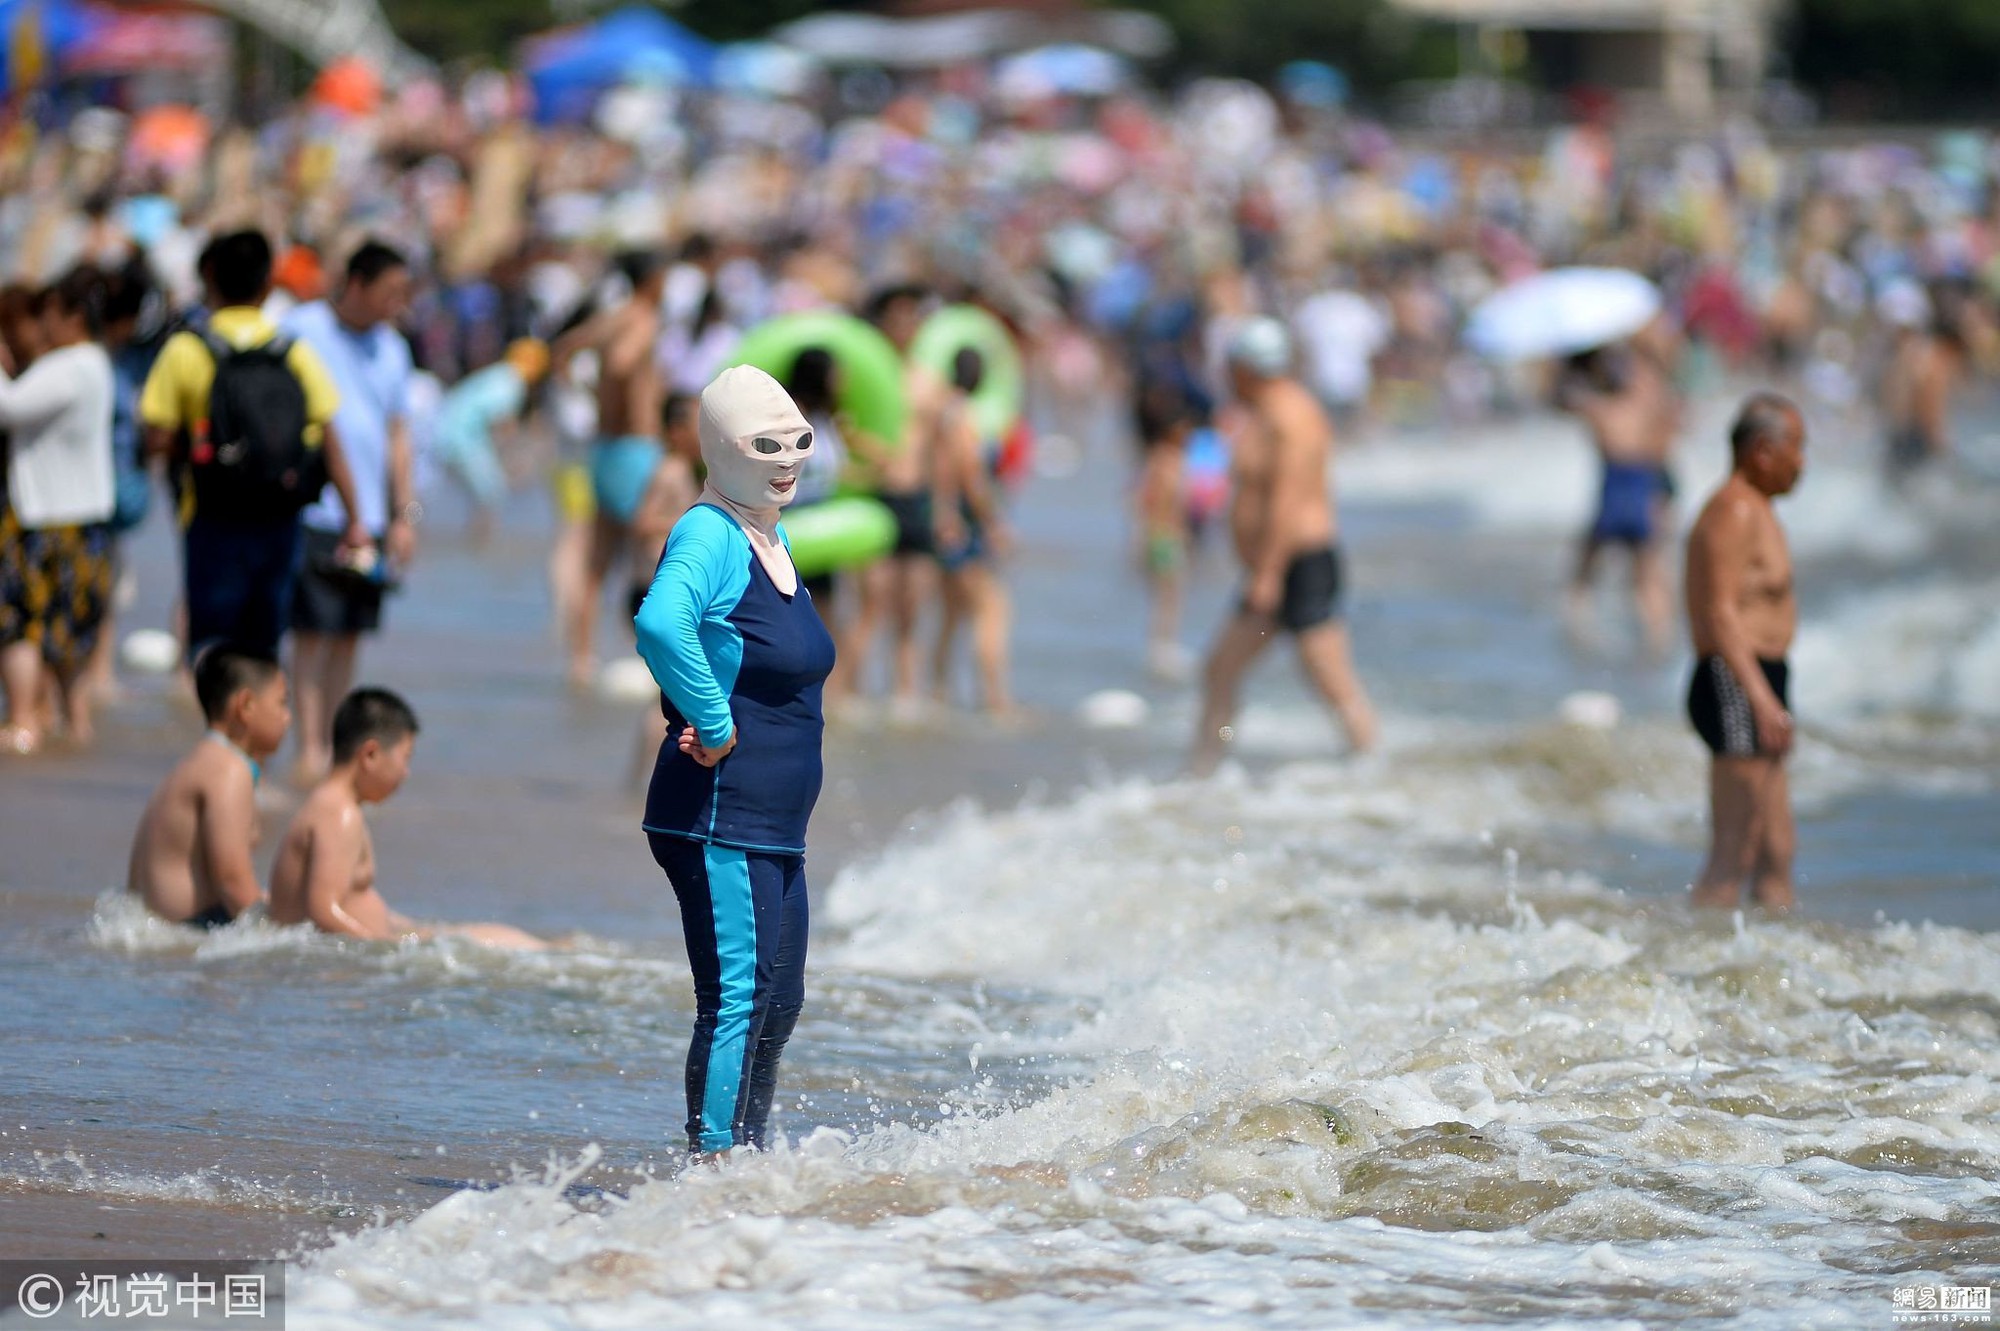 Đến hẹn lại lên, các bãi biển Trung Quốc nở rộ áo tắm Ninja đi nghỉ mát của 500 chị em sợ cháy nắng - Ảnh 2.